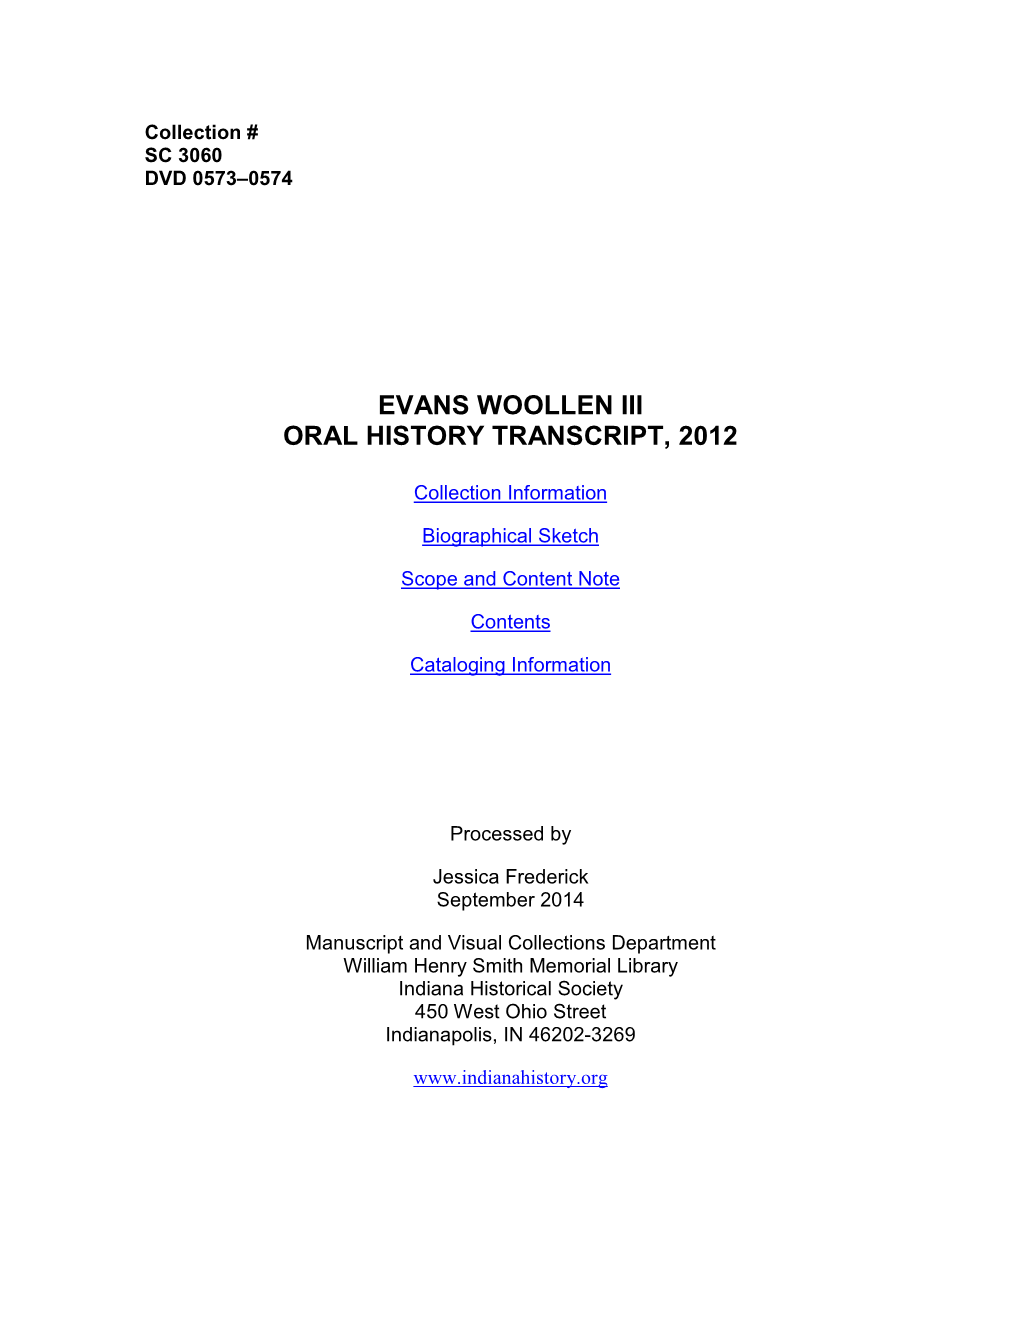 Evans Woollen Iii Oral History Transcript, 2012